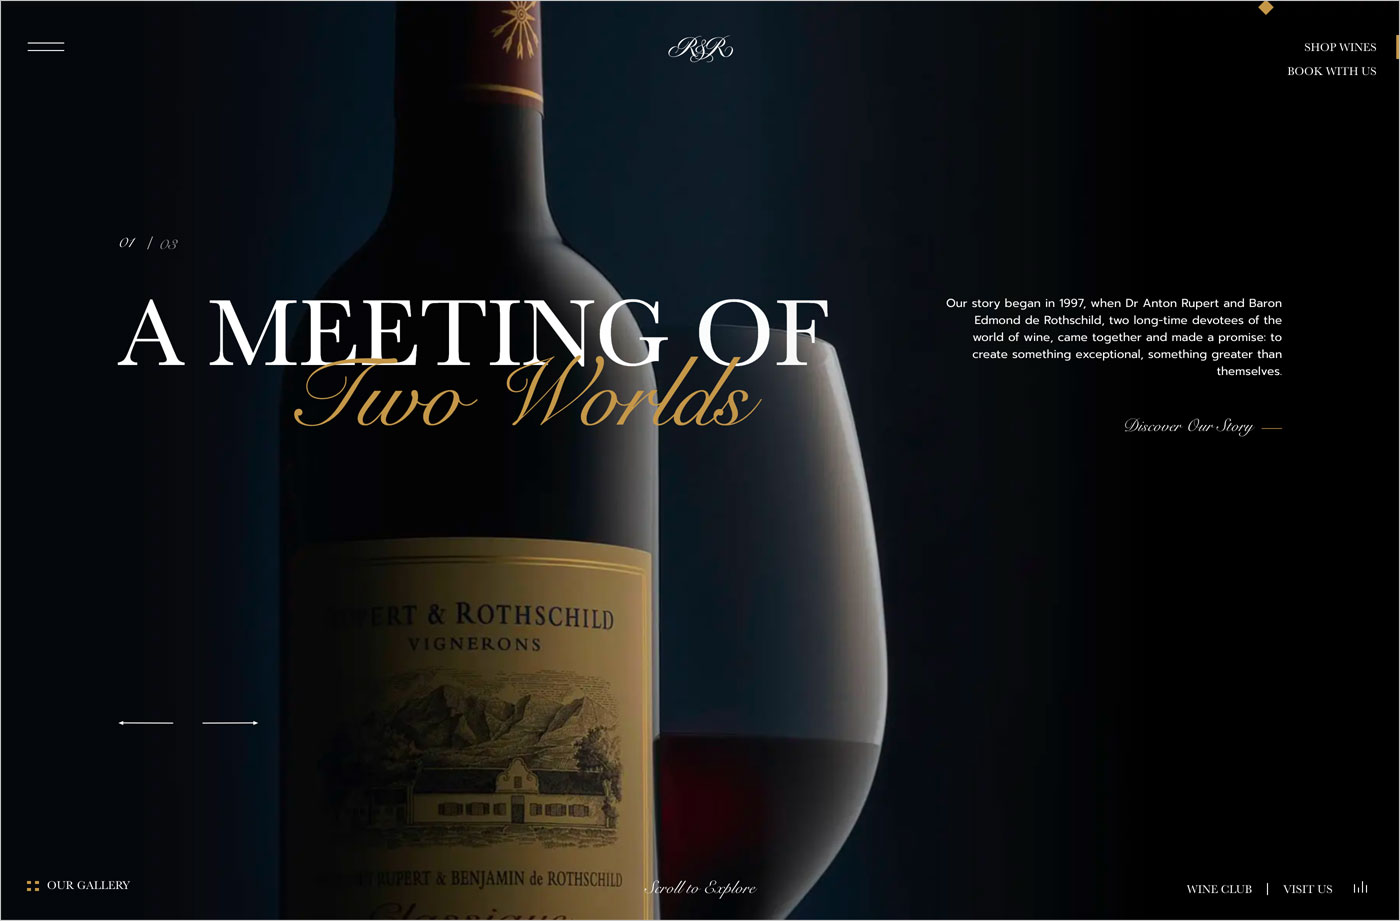 Rupert & Rothschild Vignerons | Wine South Africaウェブサイトの画面キャプチャ画像